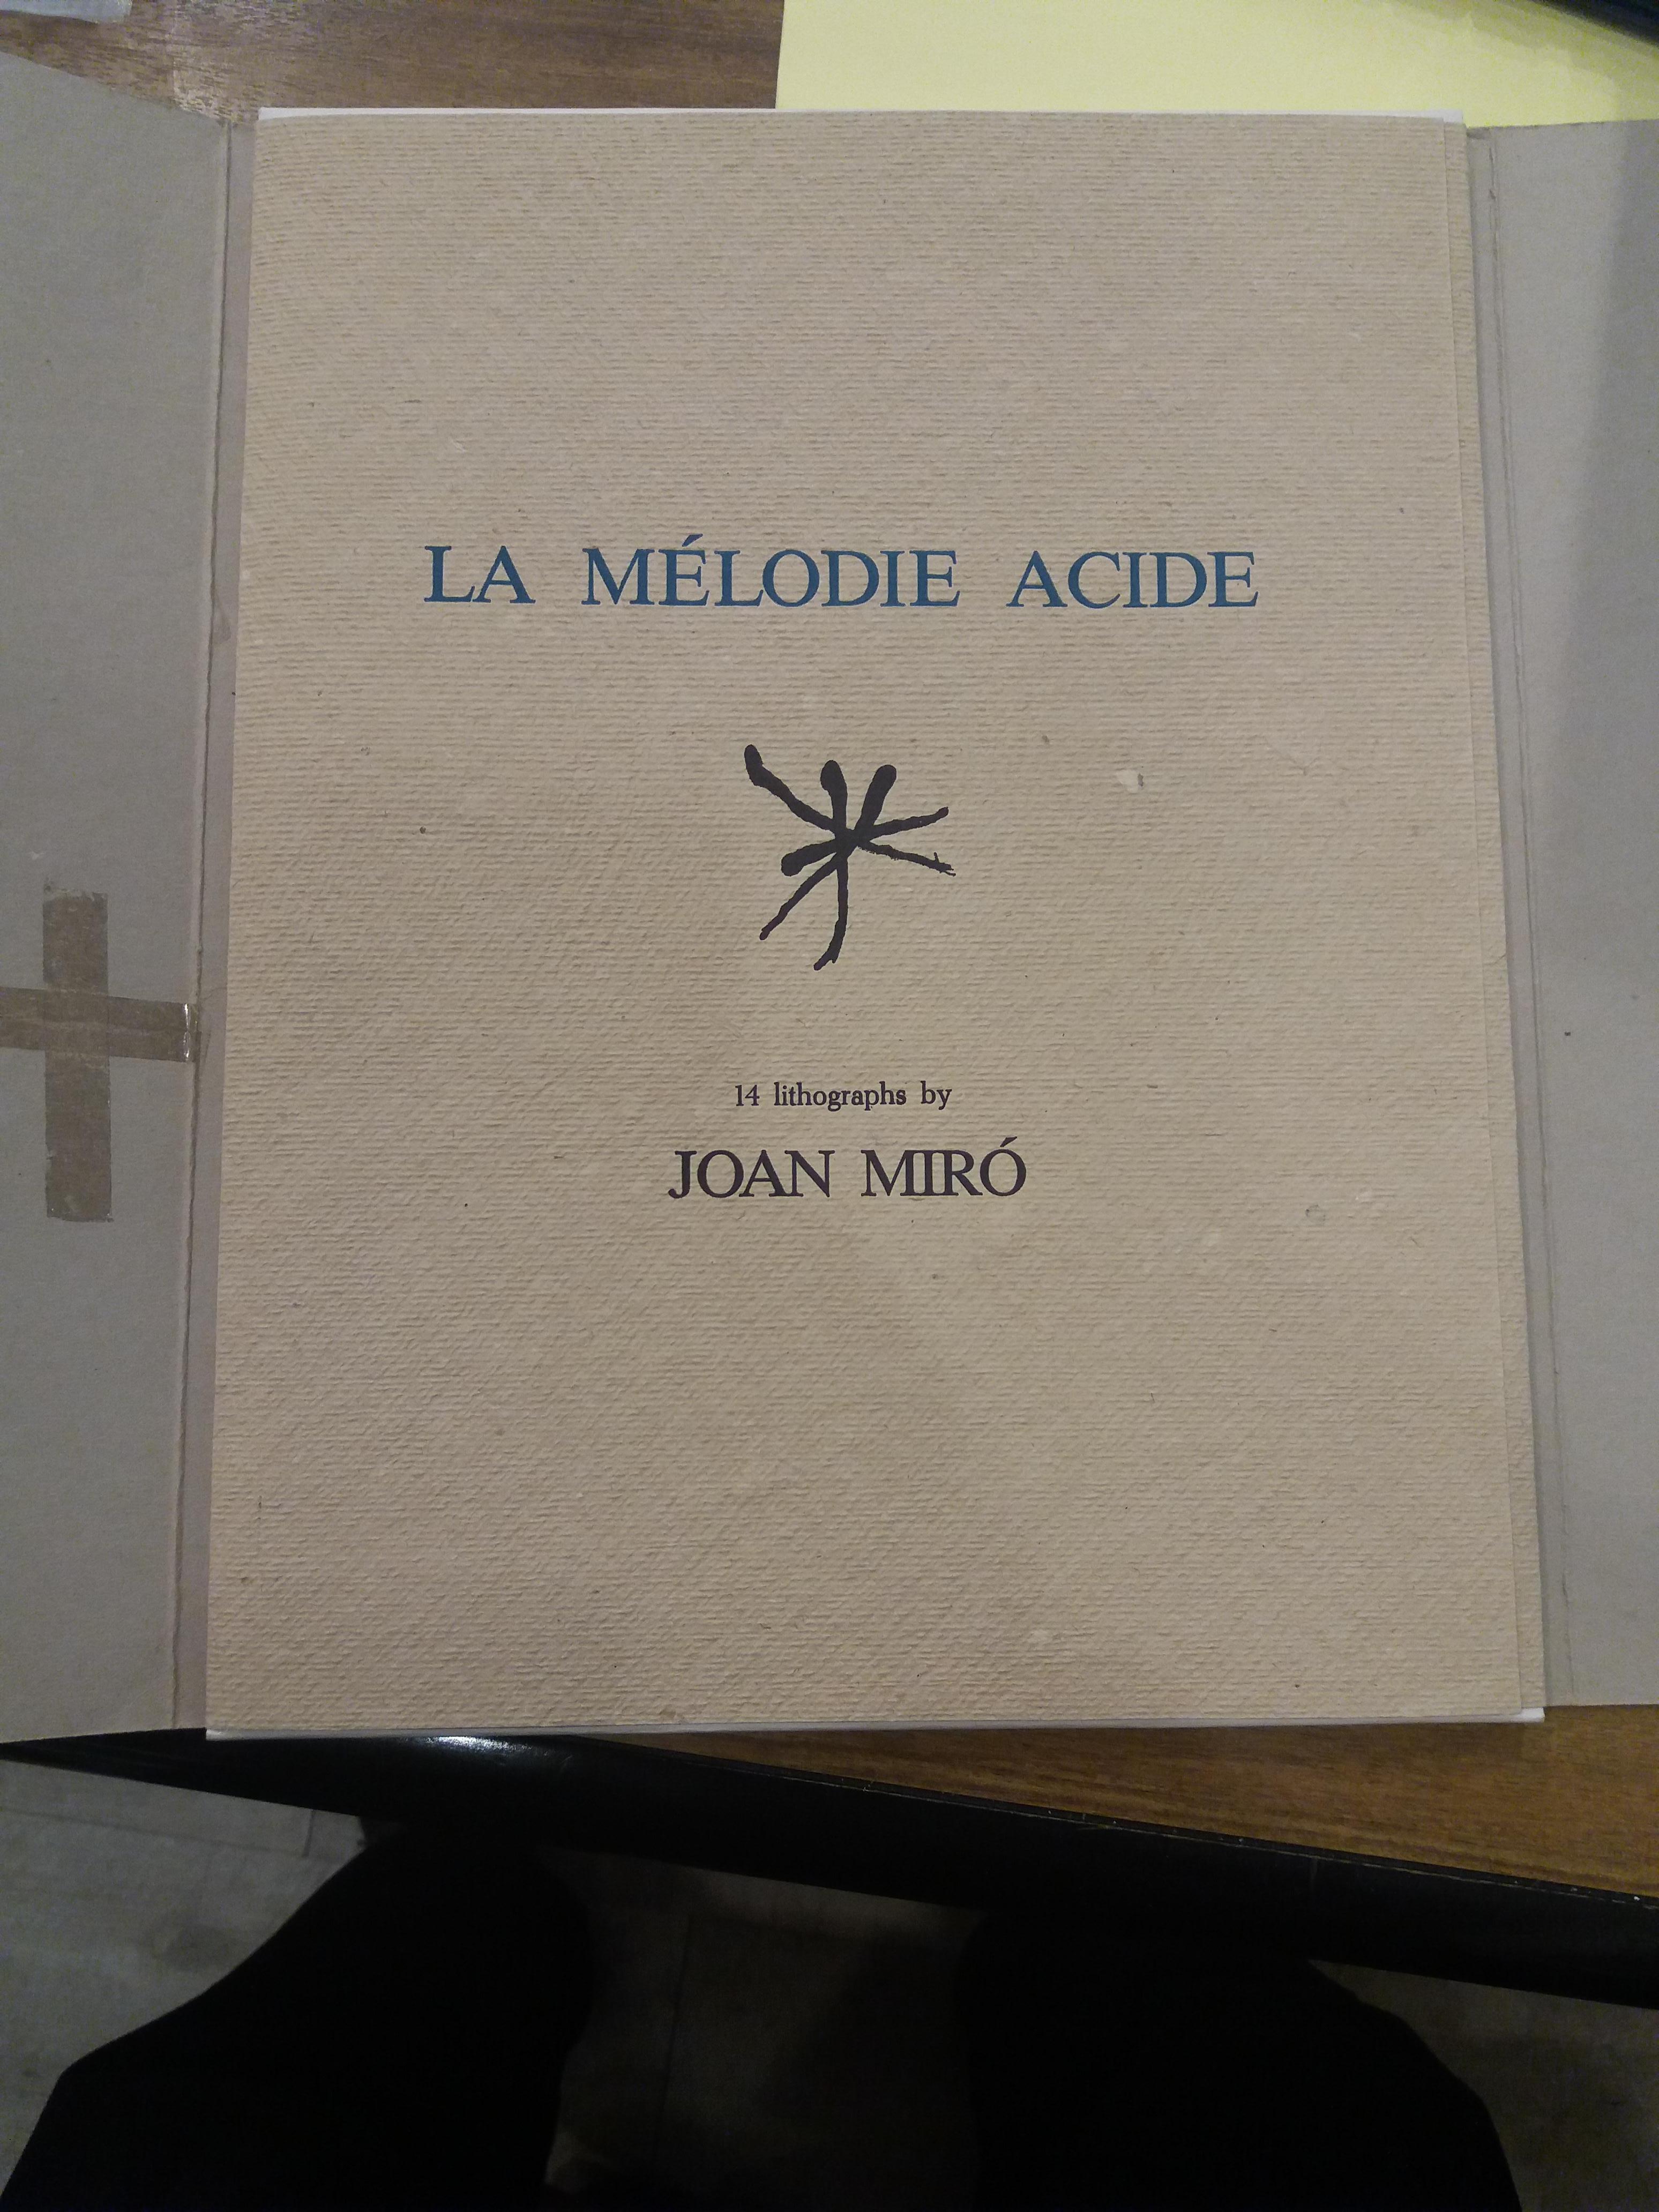 Miro   59   La melodie acide. lithograph - Print by Joan Miró